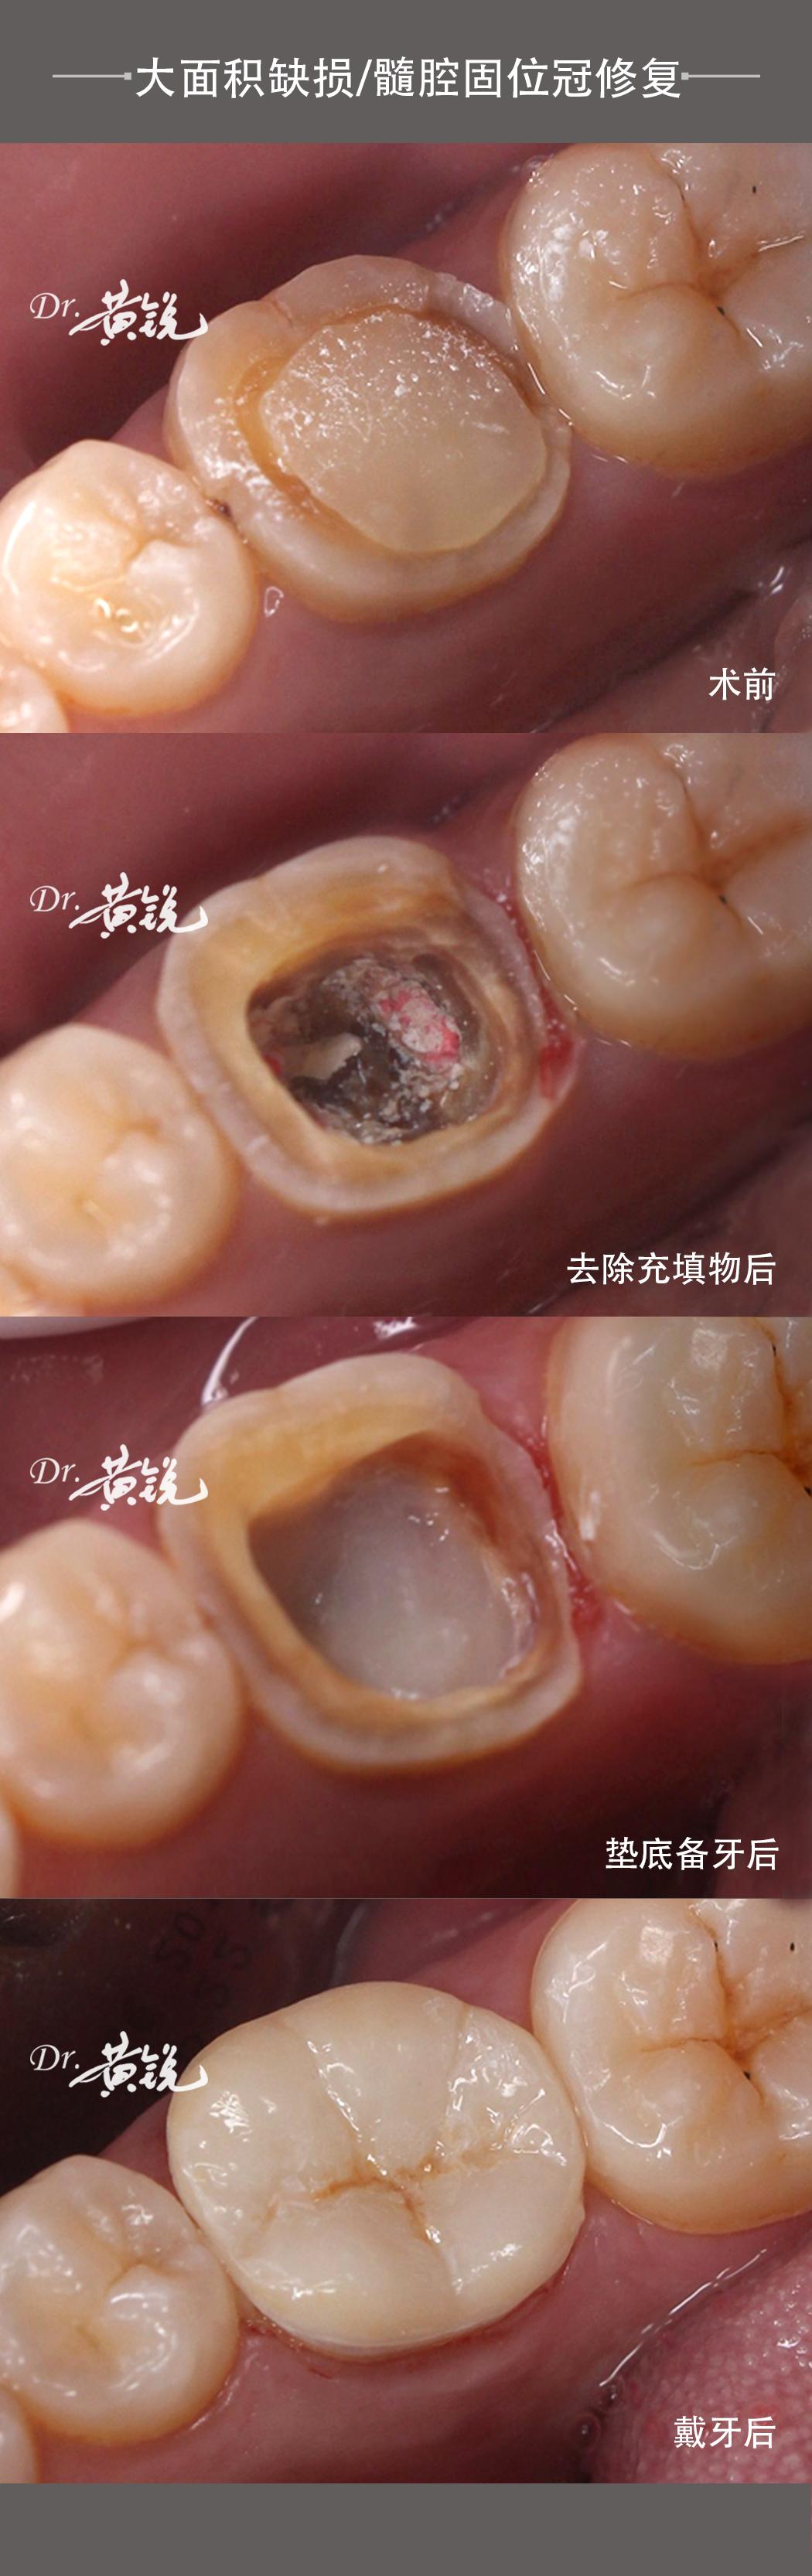 牙齿大面积缺损髓腔固位冠修复